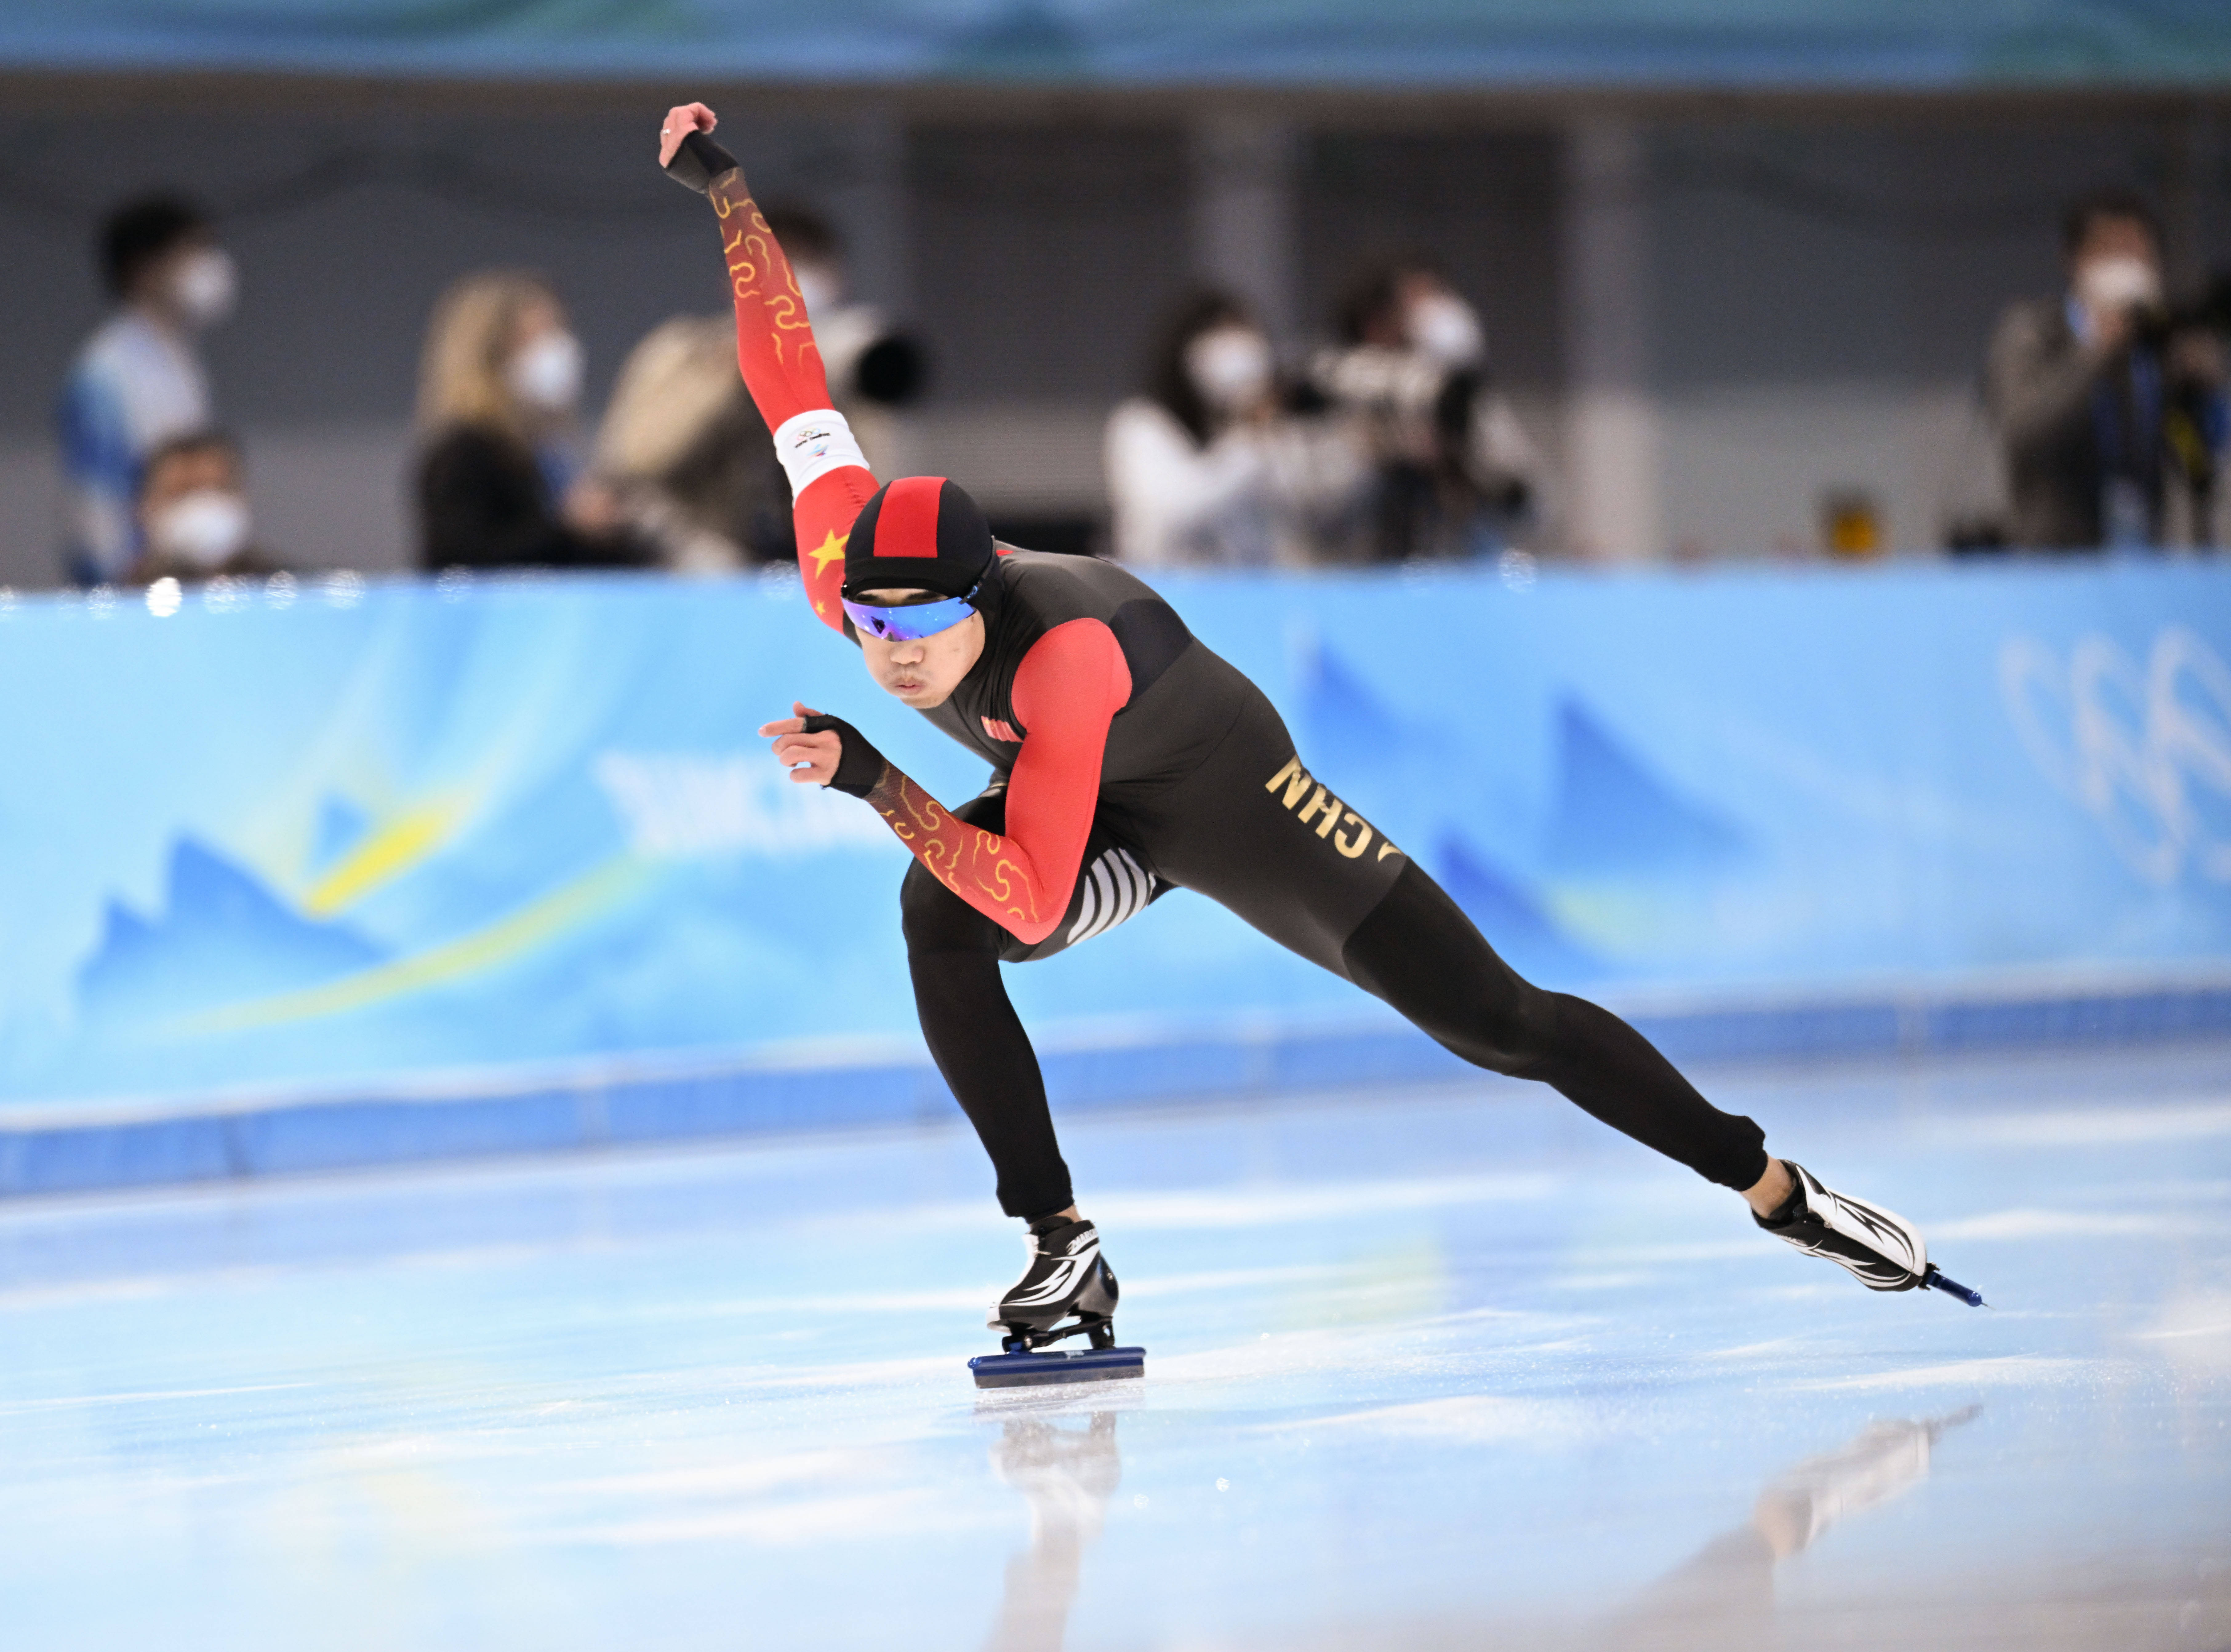 速度滑冰男子500米决赛中国选手高亭宇夺冠